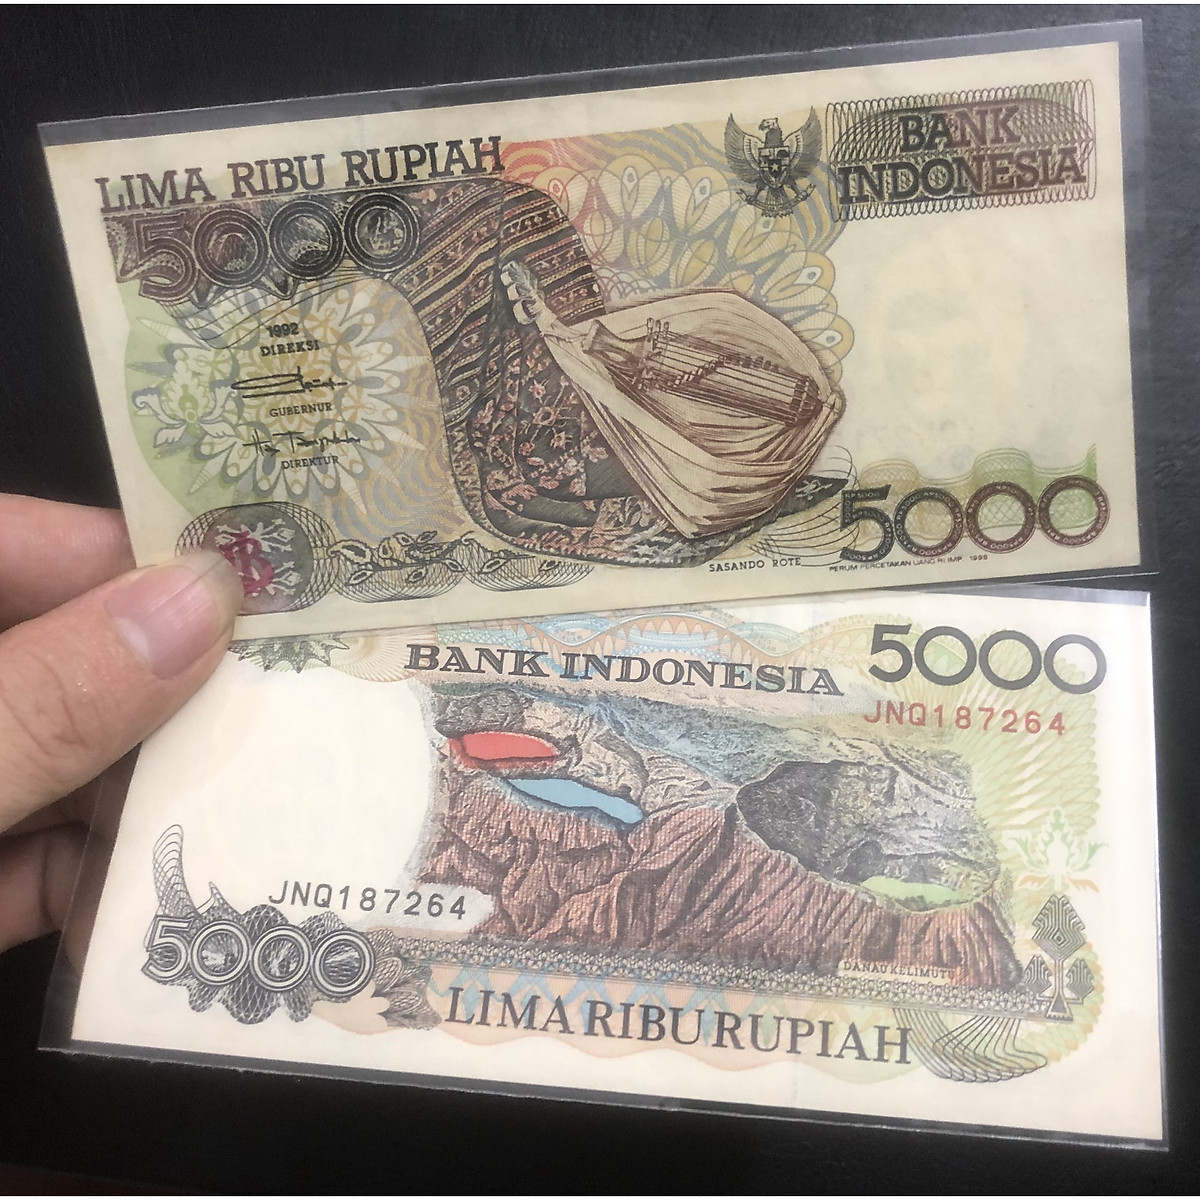 Tiền Indonesia 5000 Rupiah 1992 sưu tầm - Tặng túi nilon bảo quản